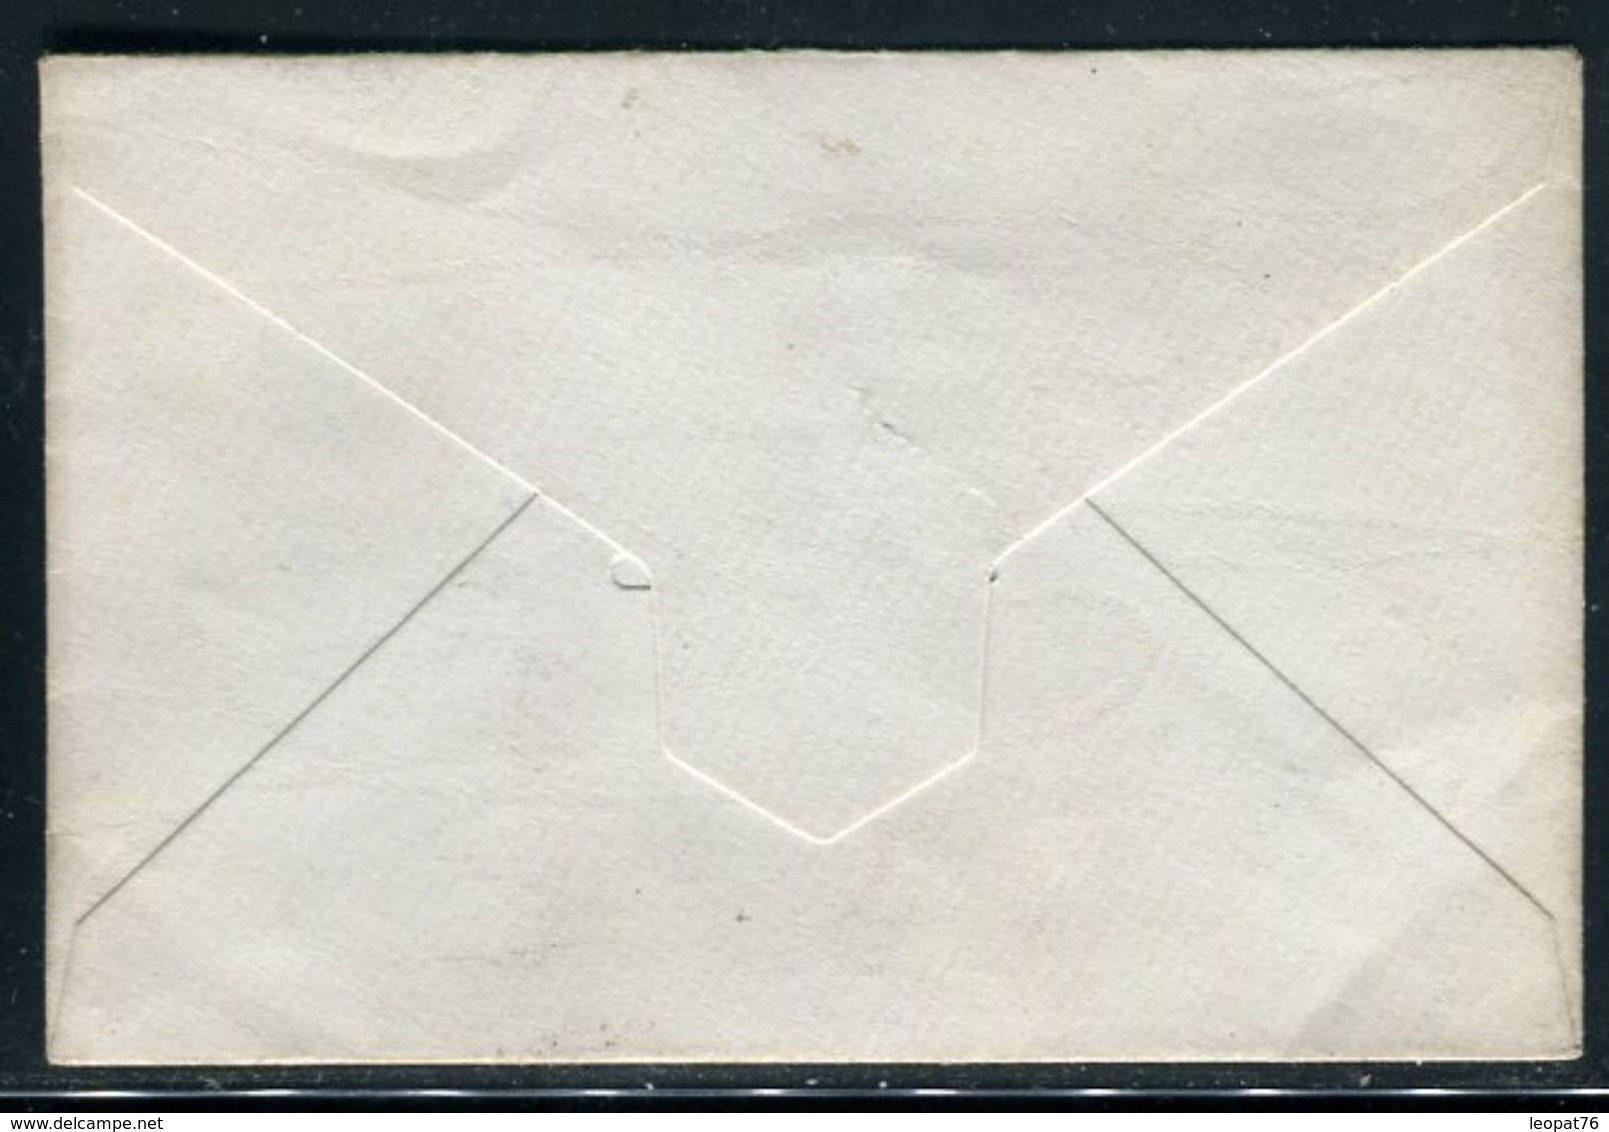 Egypte - Entier Postal Pour Le Caire En 1895 - Ref J 62 - 1866-1914 Khédivat D'Égypte